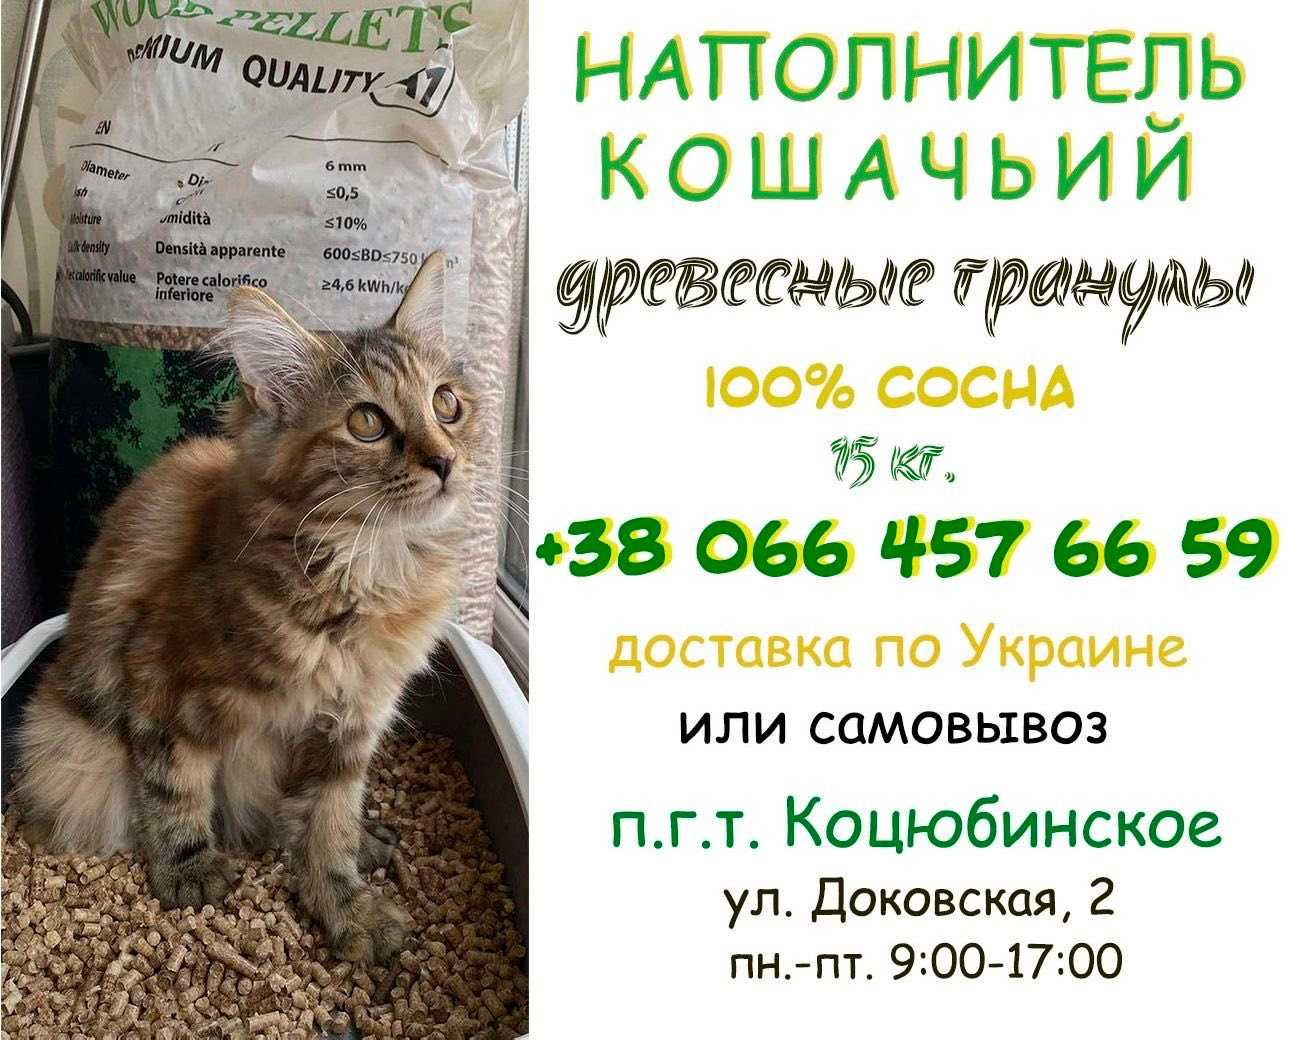 Наполнитель для кошачьего туалета. Бесплатная доставка по Киеву.